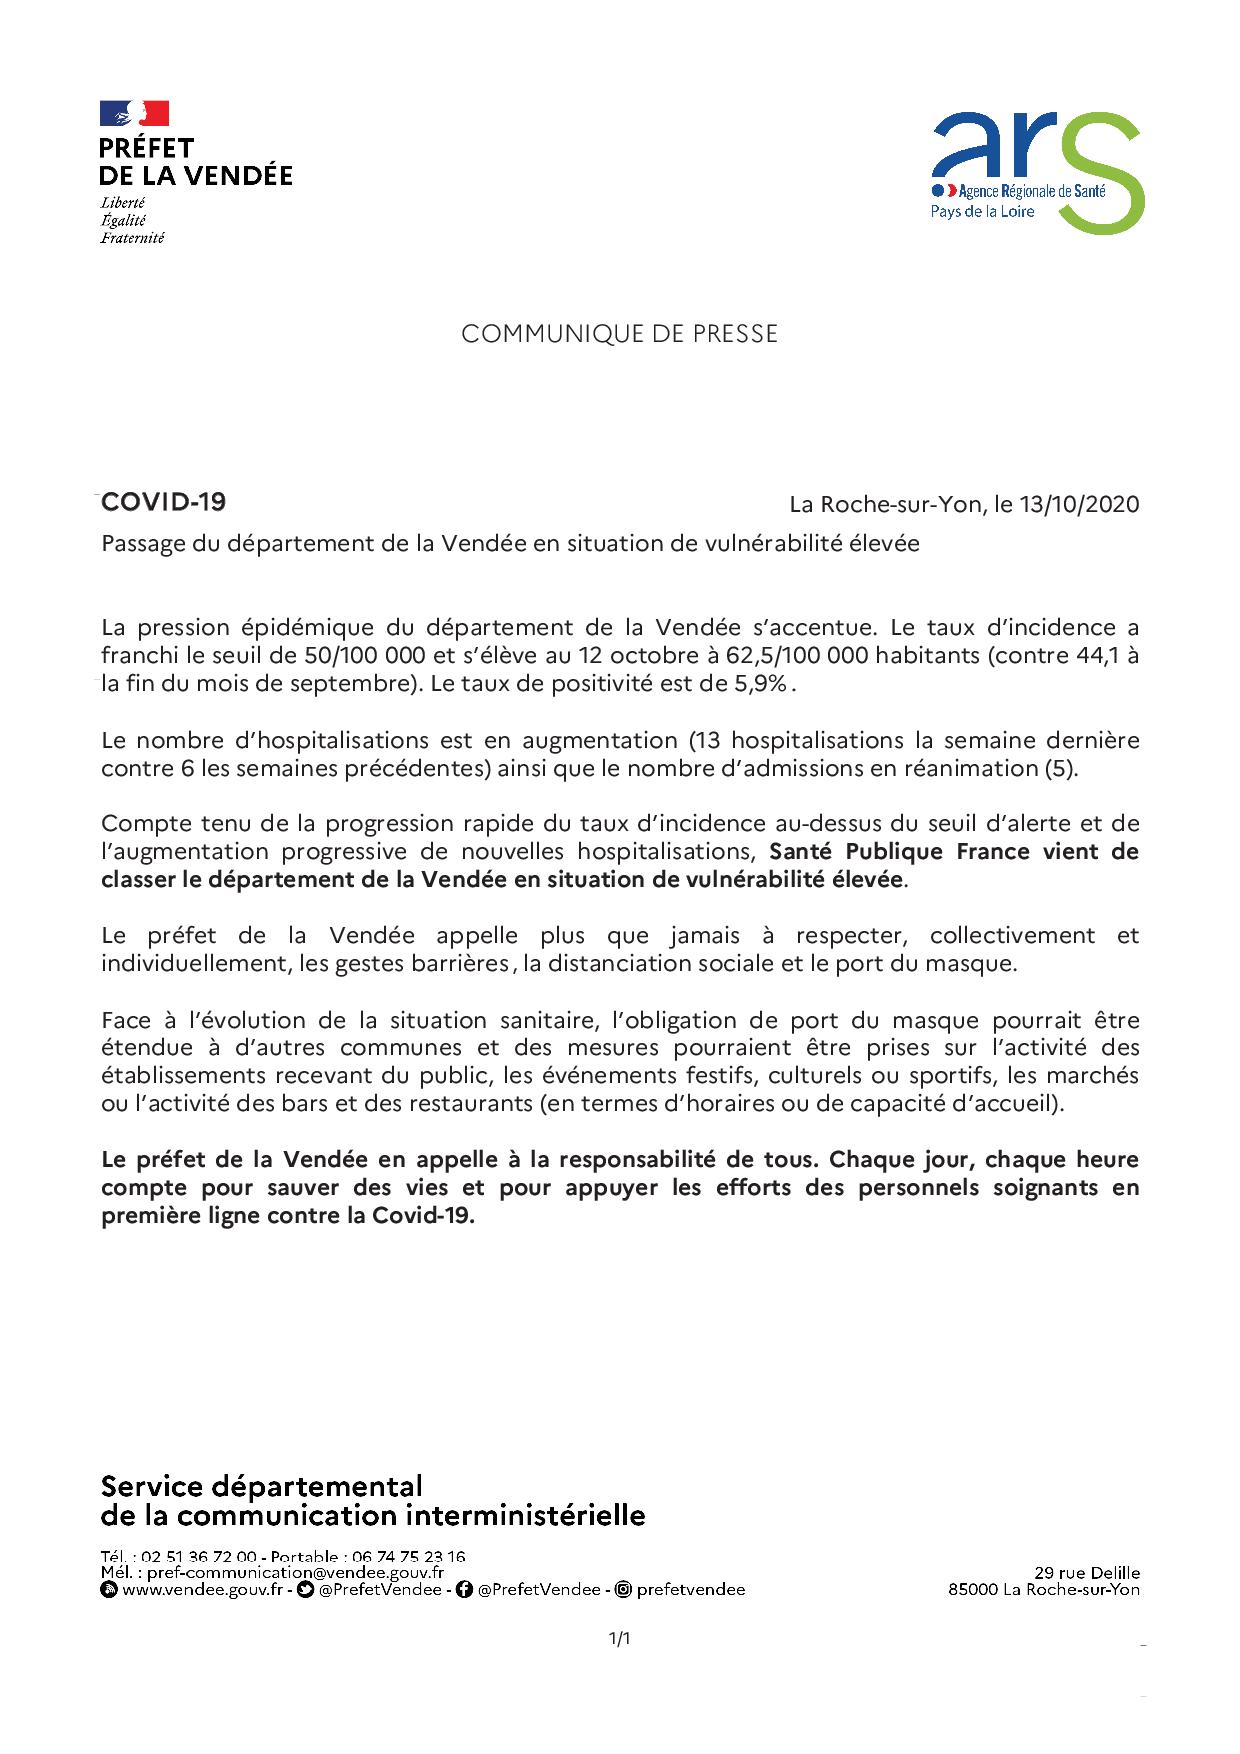 Communiqué de Presse: Passage du département de la Vendée en situation de vulnérabilité élevée